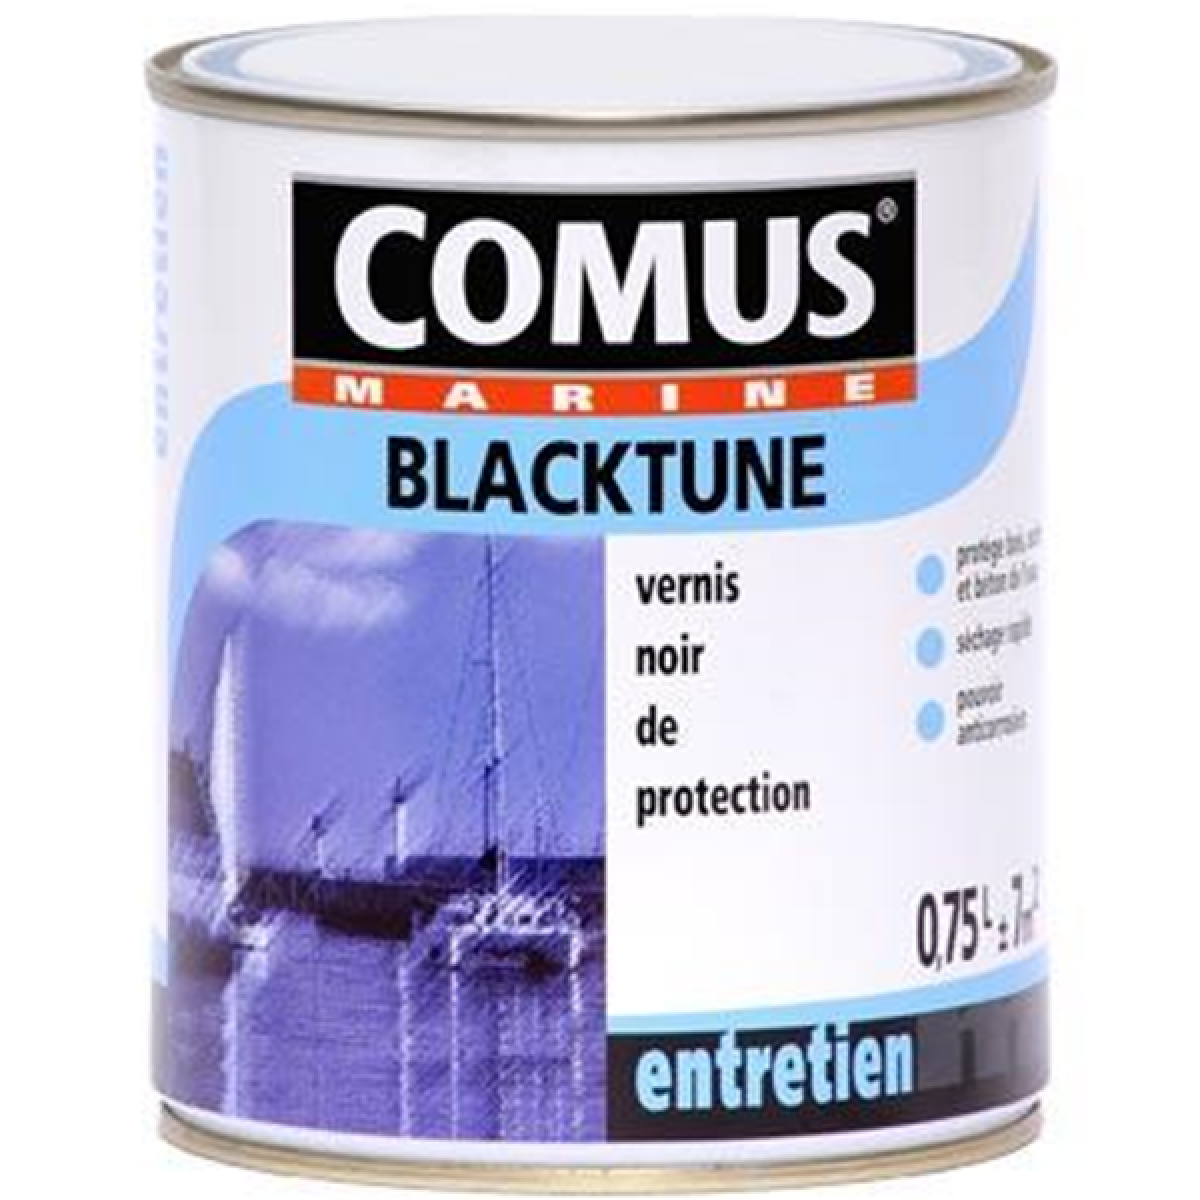 Comus - BLACKTUNE 0,75L - Vernis de protection noir bitumeux à base de brai de pétrole - COMUS MARINE - Peinture extérieure